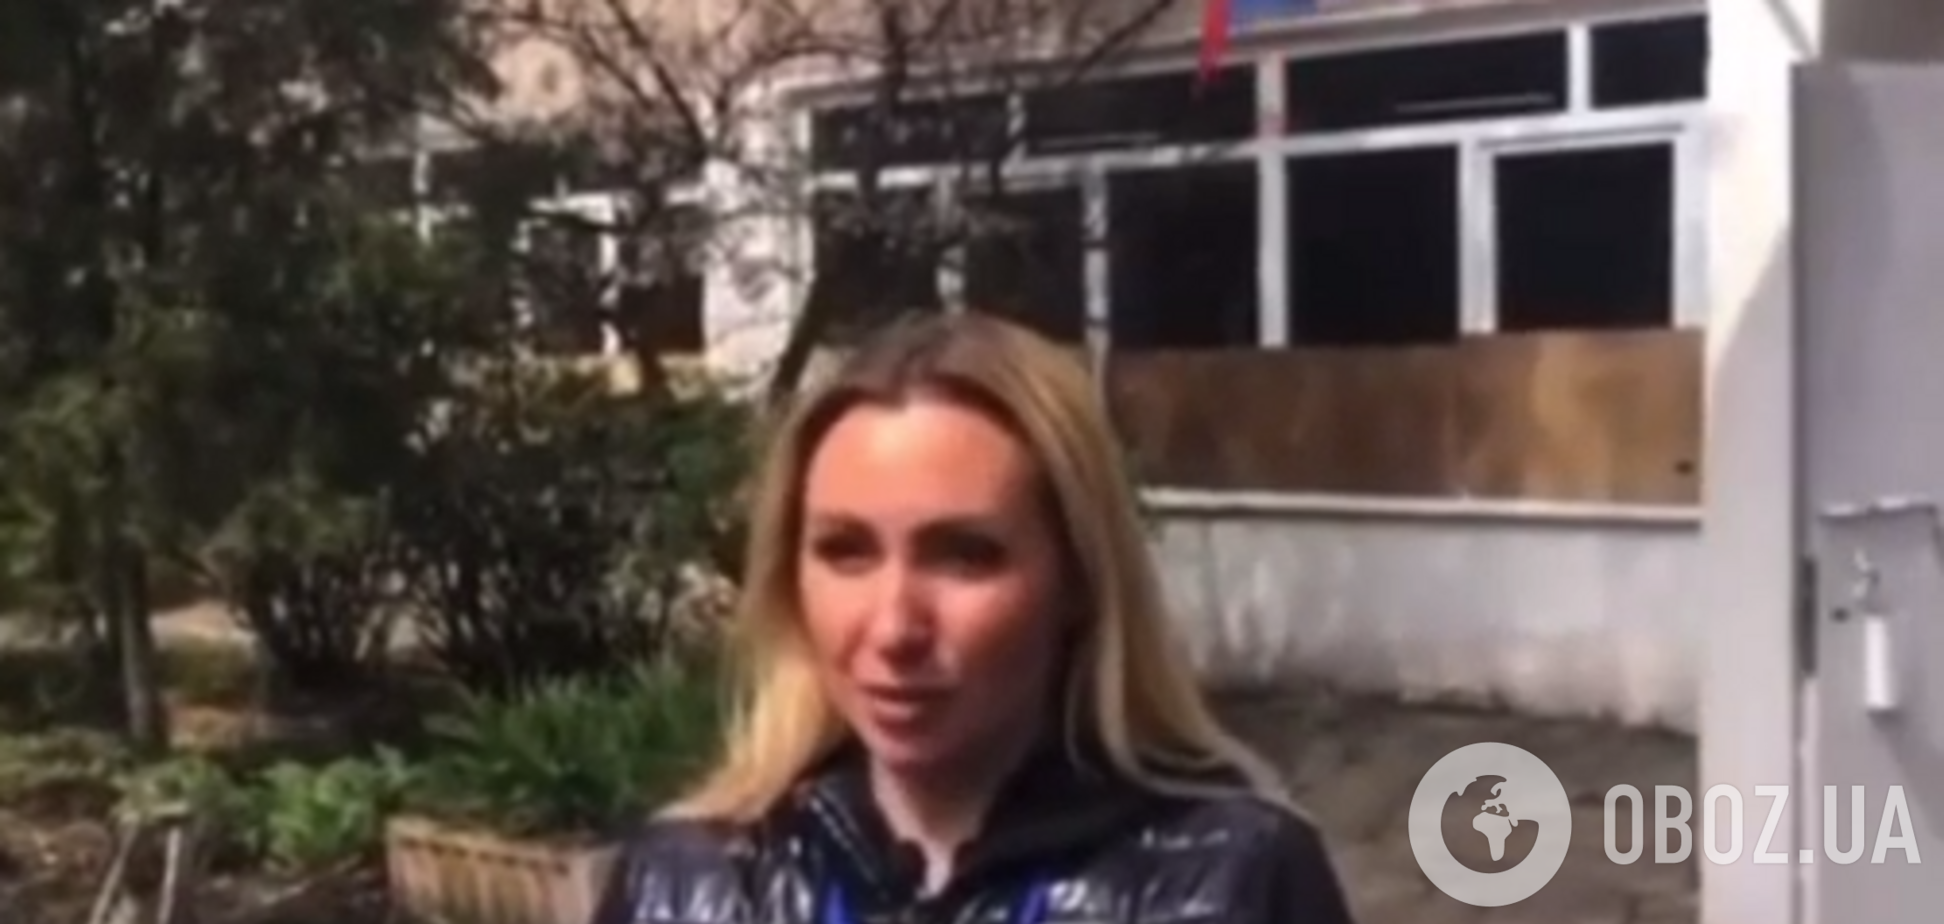 Отримала 'зірочку' від окупантів: у Маріуполі показали депутатку ОПЗЖ, яка зрадила Україну. Відео